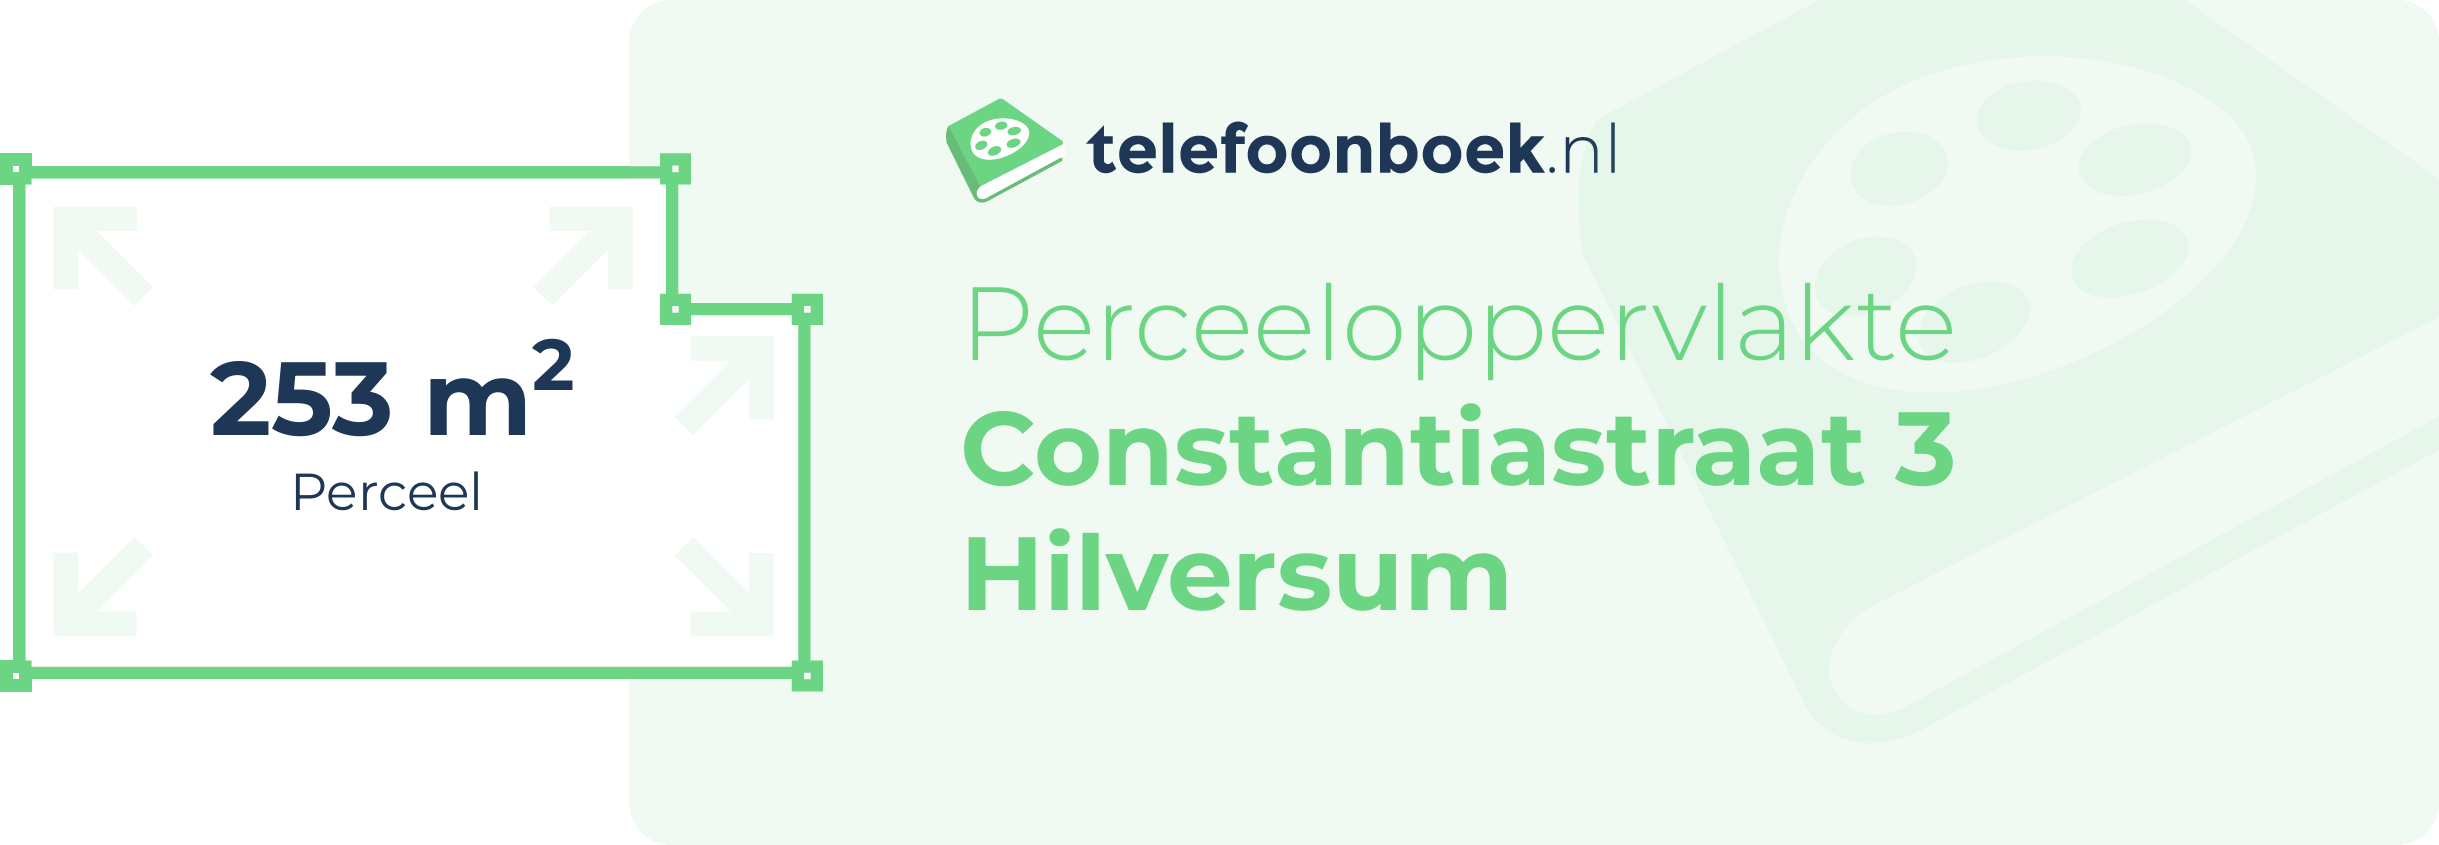 Perceeloppervlakte Constantiastraat 3 Hilversum